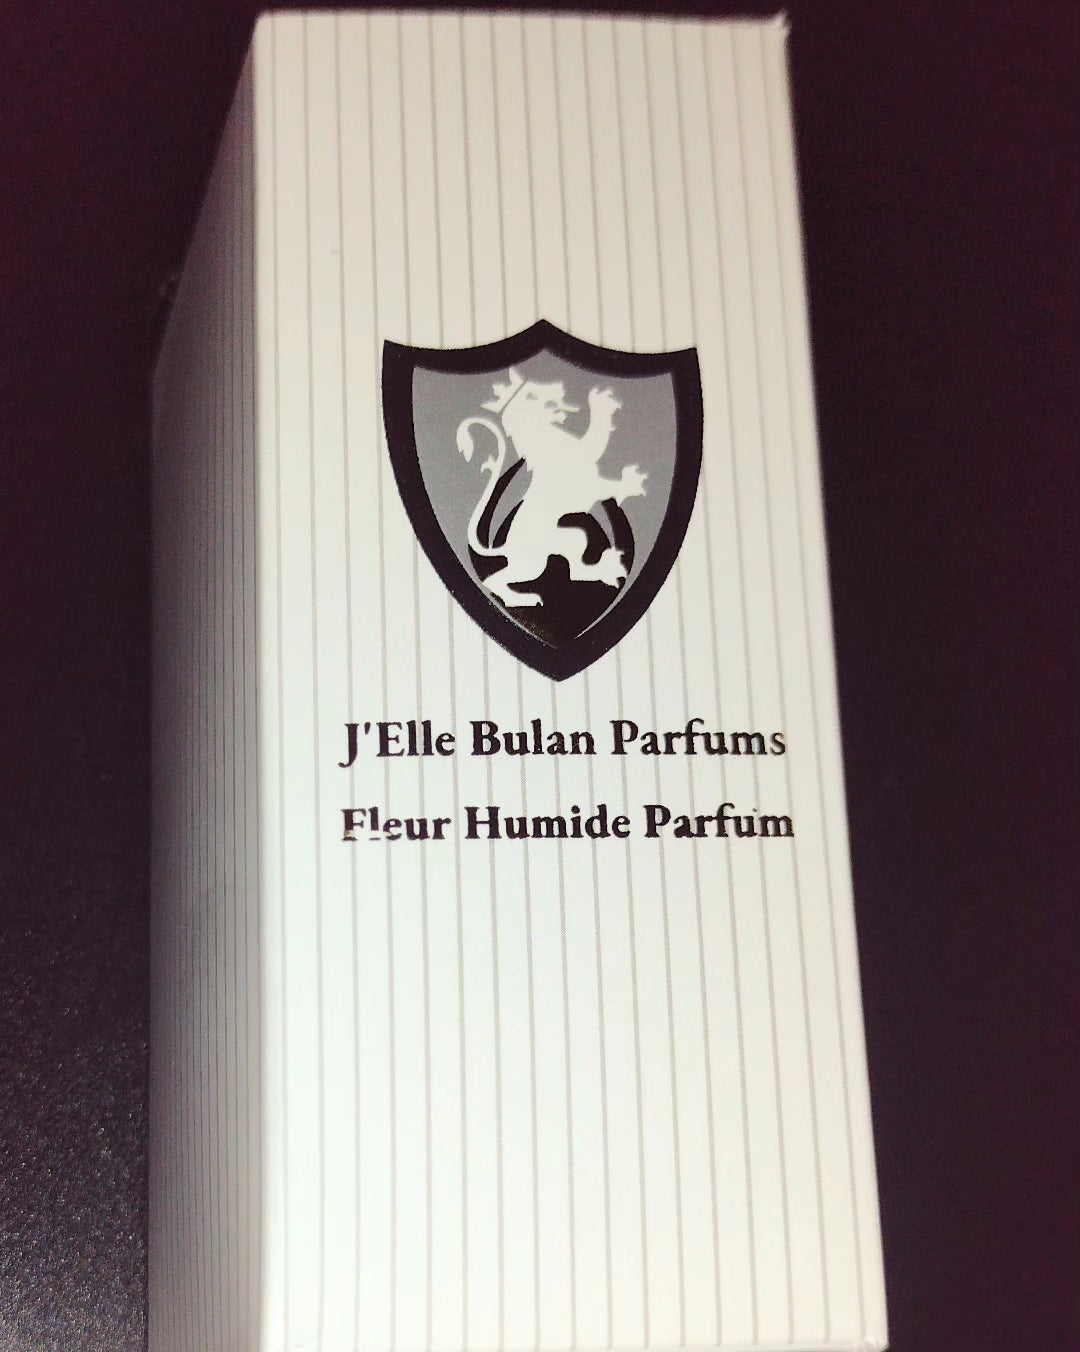 Fleur Humide Eau de Parfum Pilot Edition by J'Elle Bulan Parfums